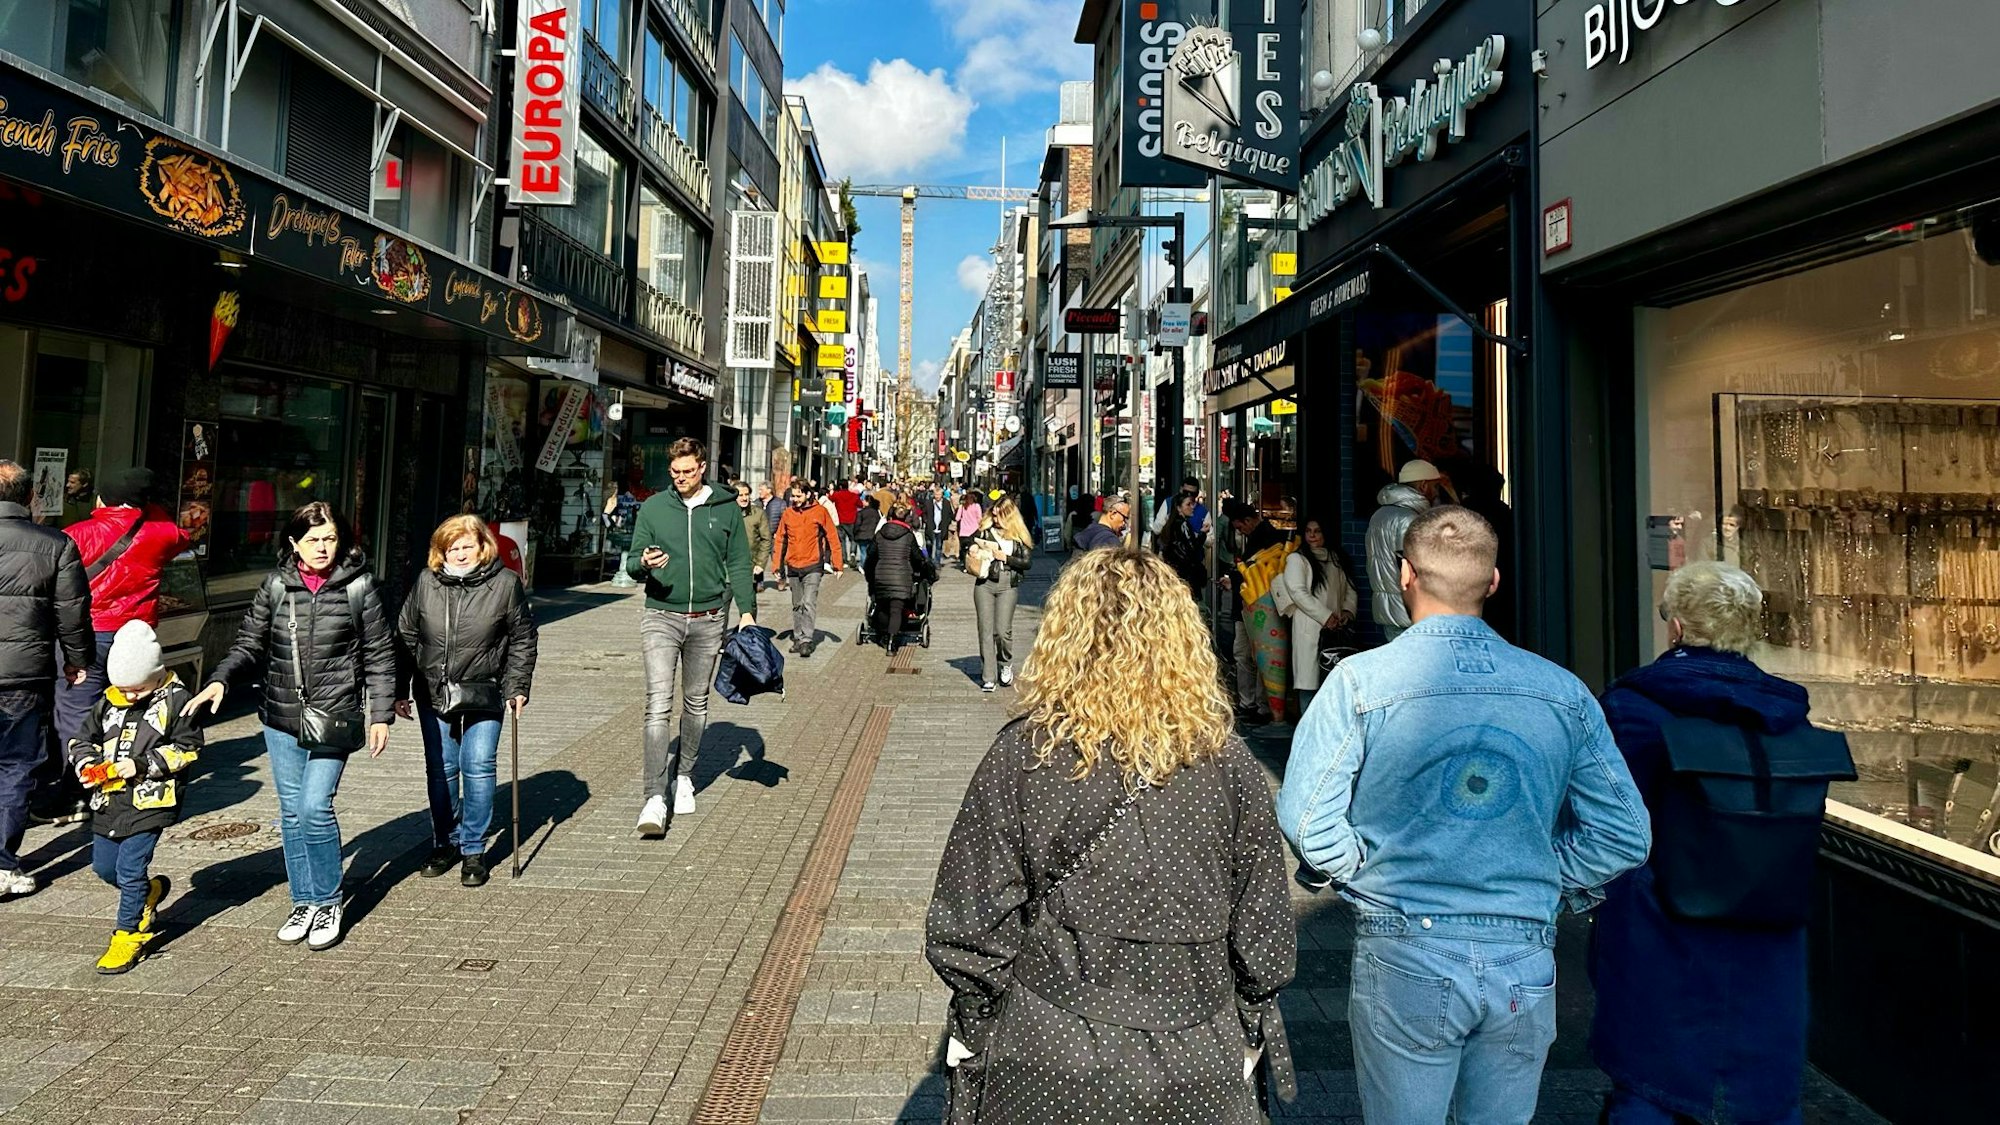 Ein Blick in die Hohe Straße, über die viele Menschen laufen.